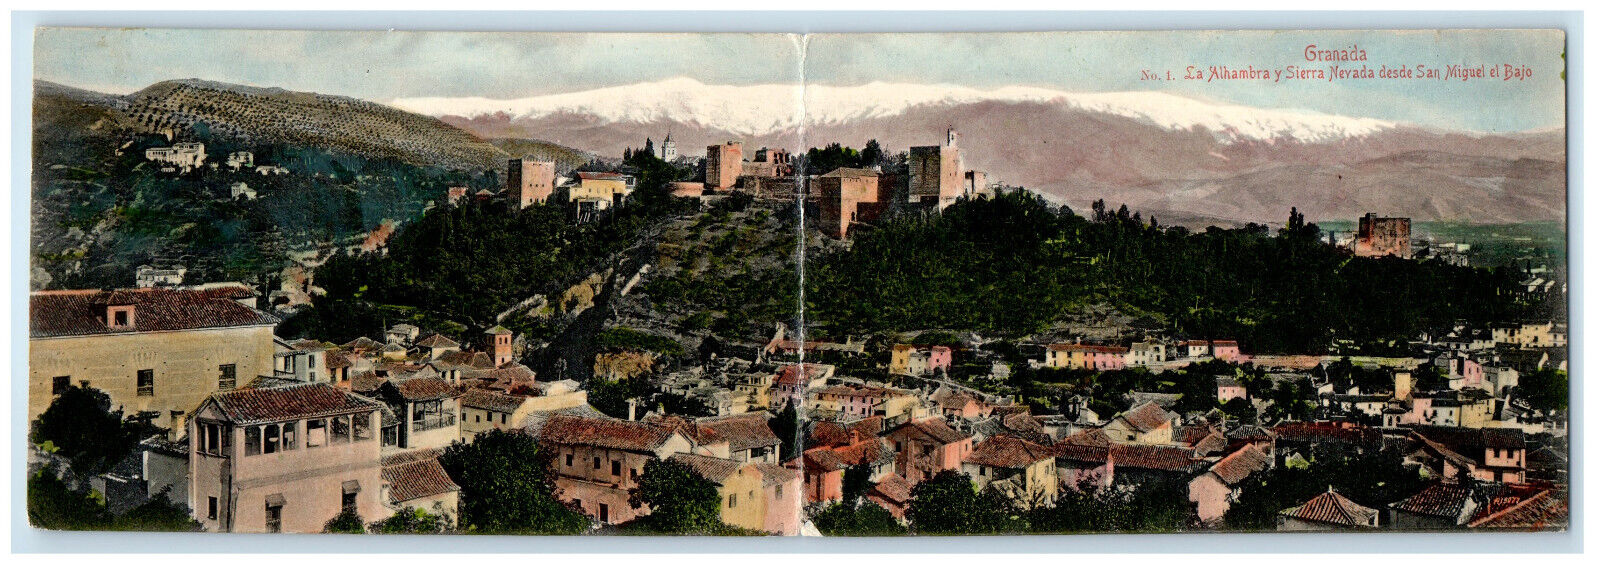 c1910 Panoramic View Alhambra & Sierra Nevada El Bajo Granada Spain Postcard